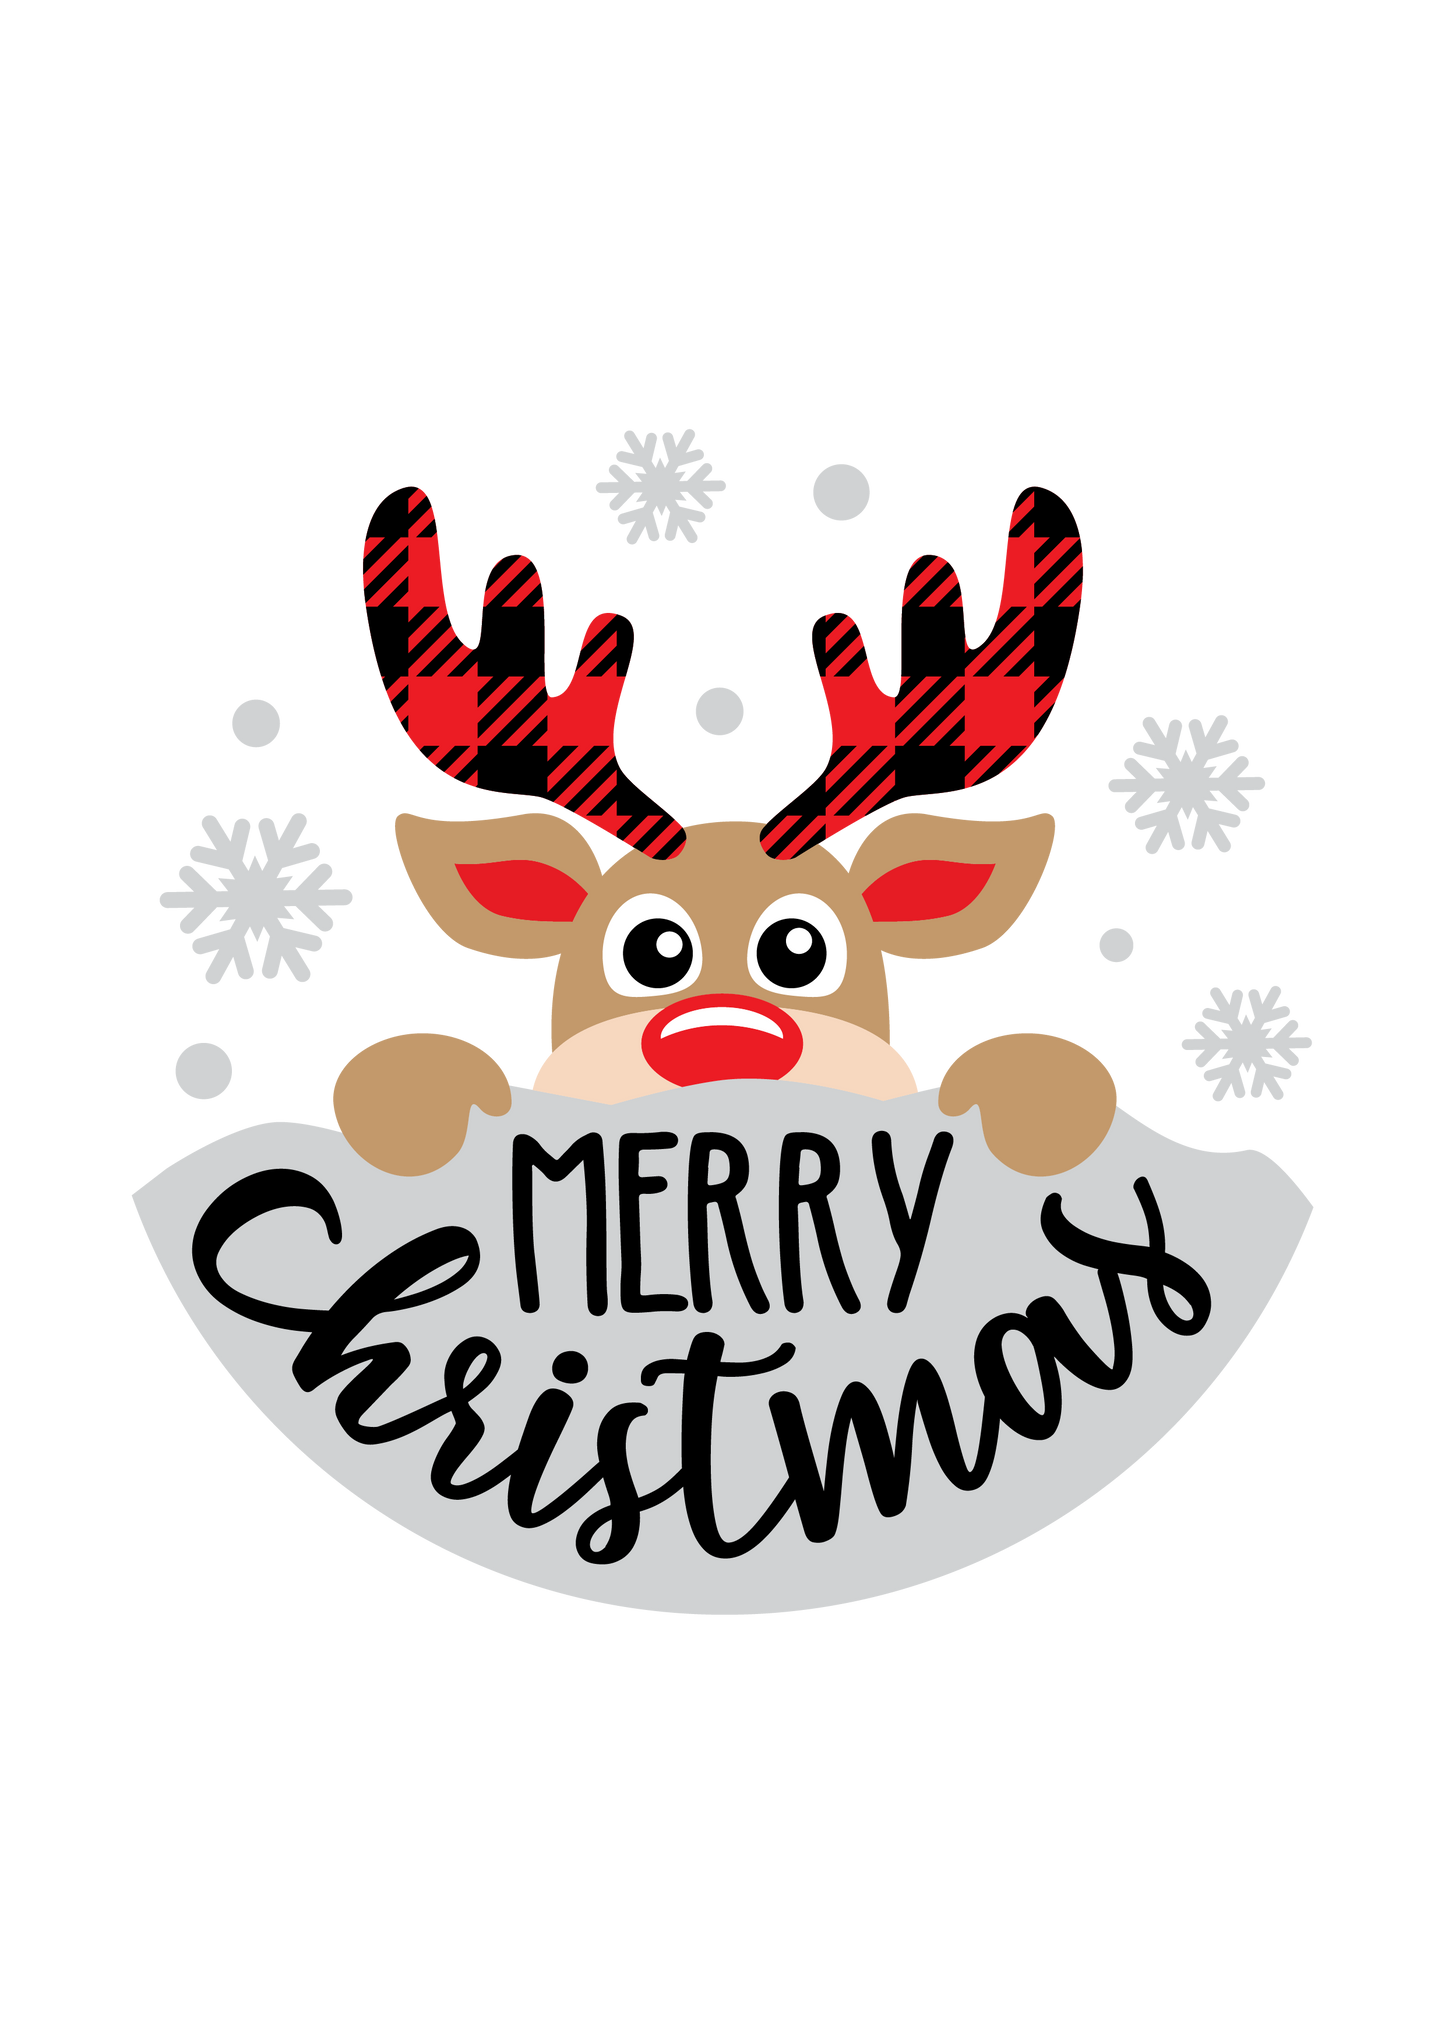 Reindeer Merry Christmas door sign